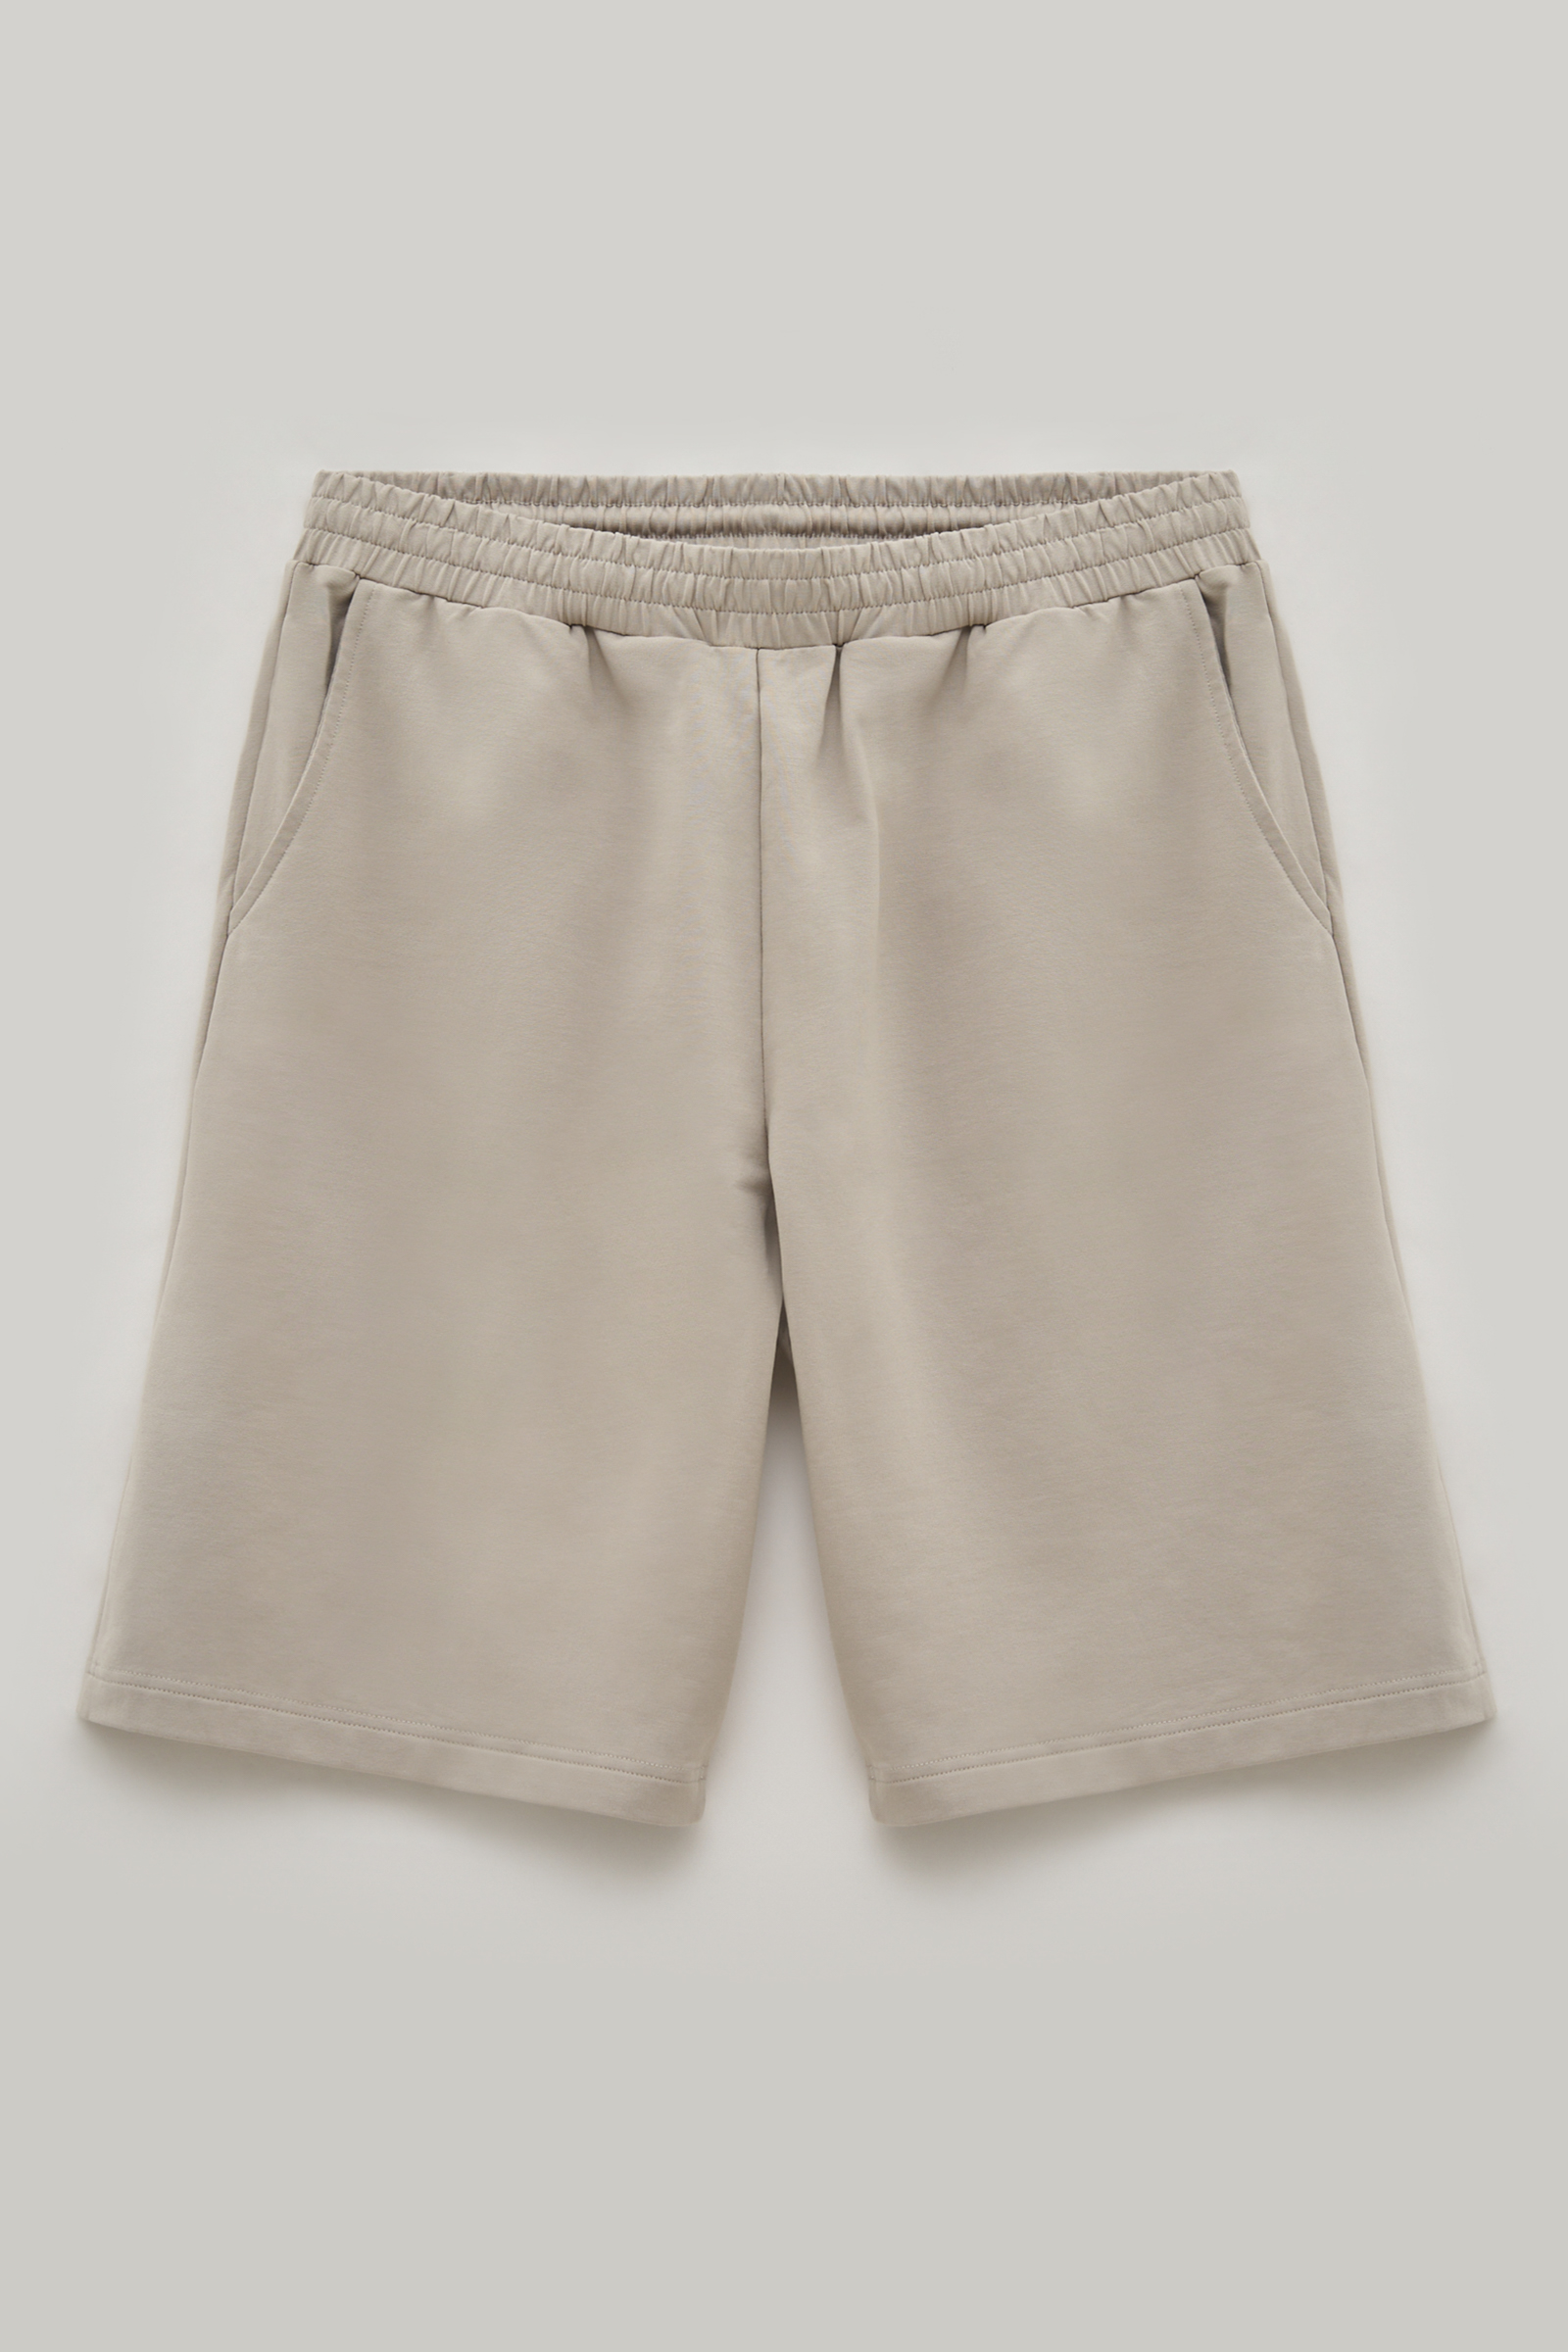 Повседневные шорты мужские Finn Flare FSE21033 серые XL